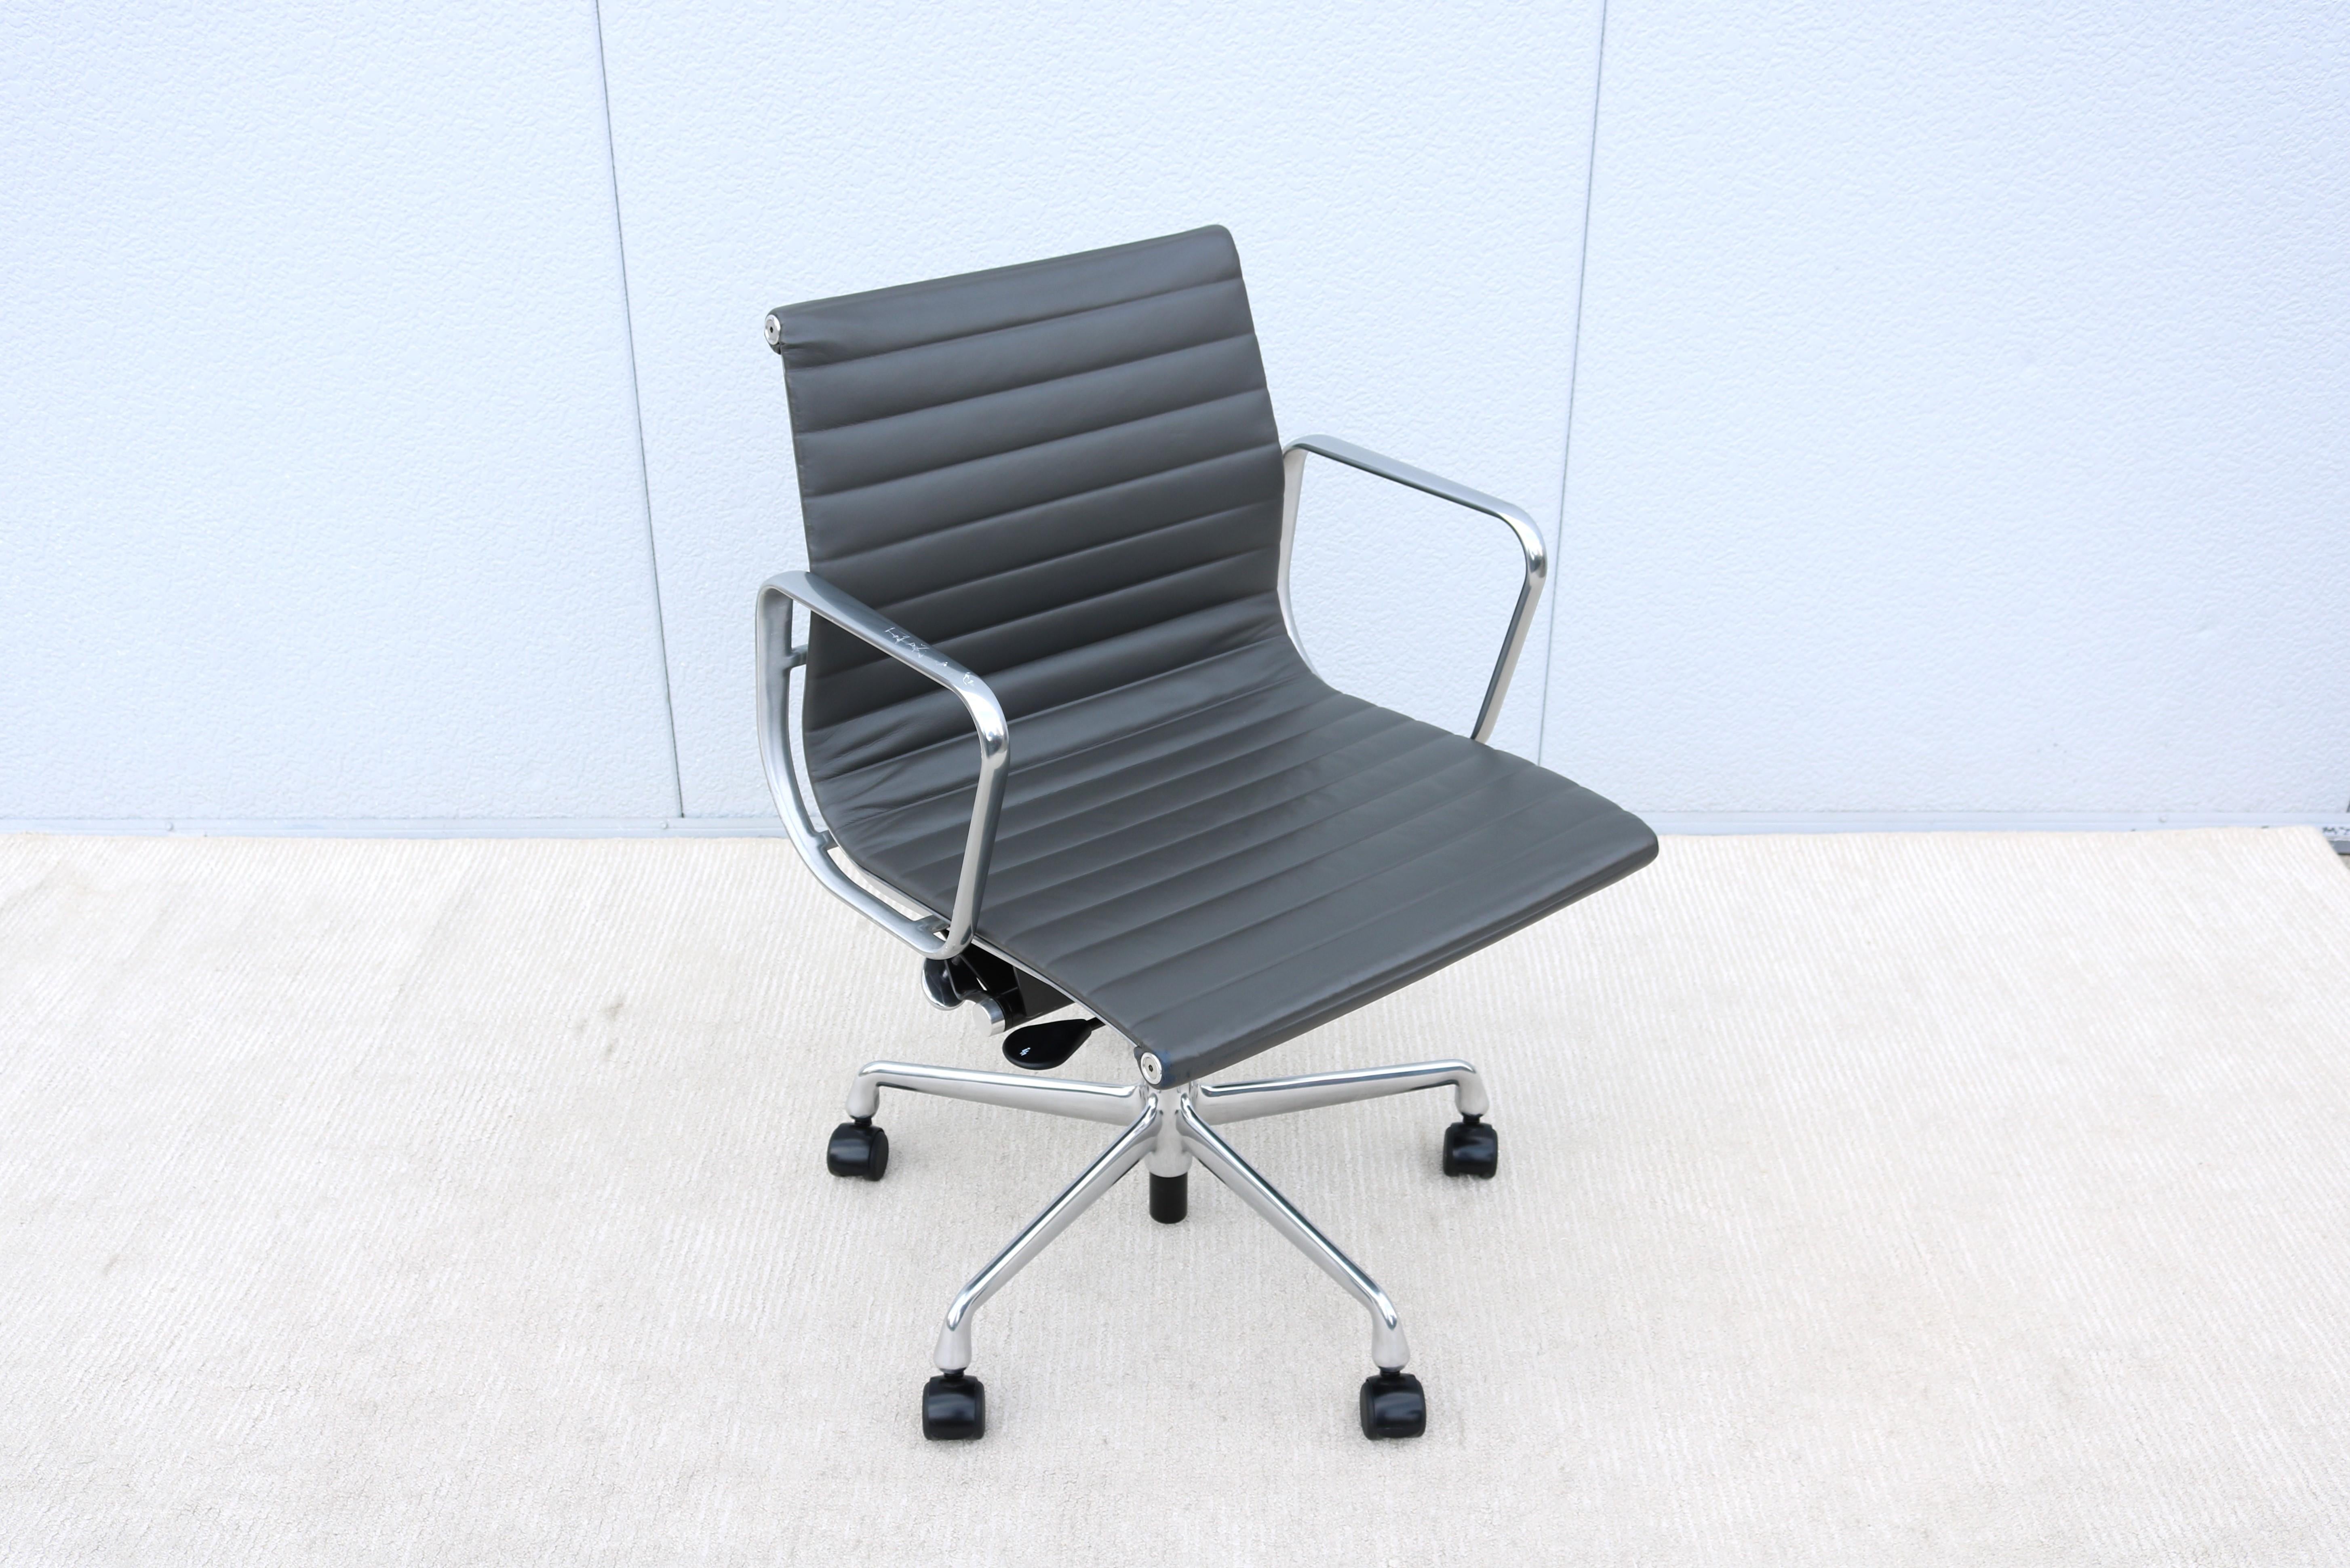 Superbe chaise de gestion de groupe Eames en aluminium, authentiquement moderne du milieu du siècle.
Un design intemporel, classique et contemporain, avec des caractéristiques de confort innovantes.
L'une des chaises les plus populaires d'Herman